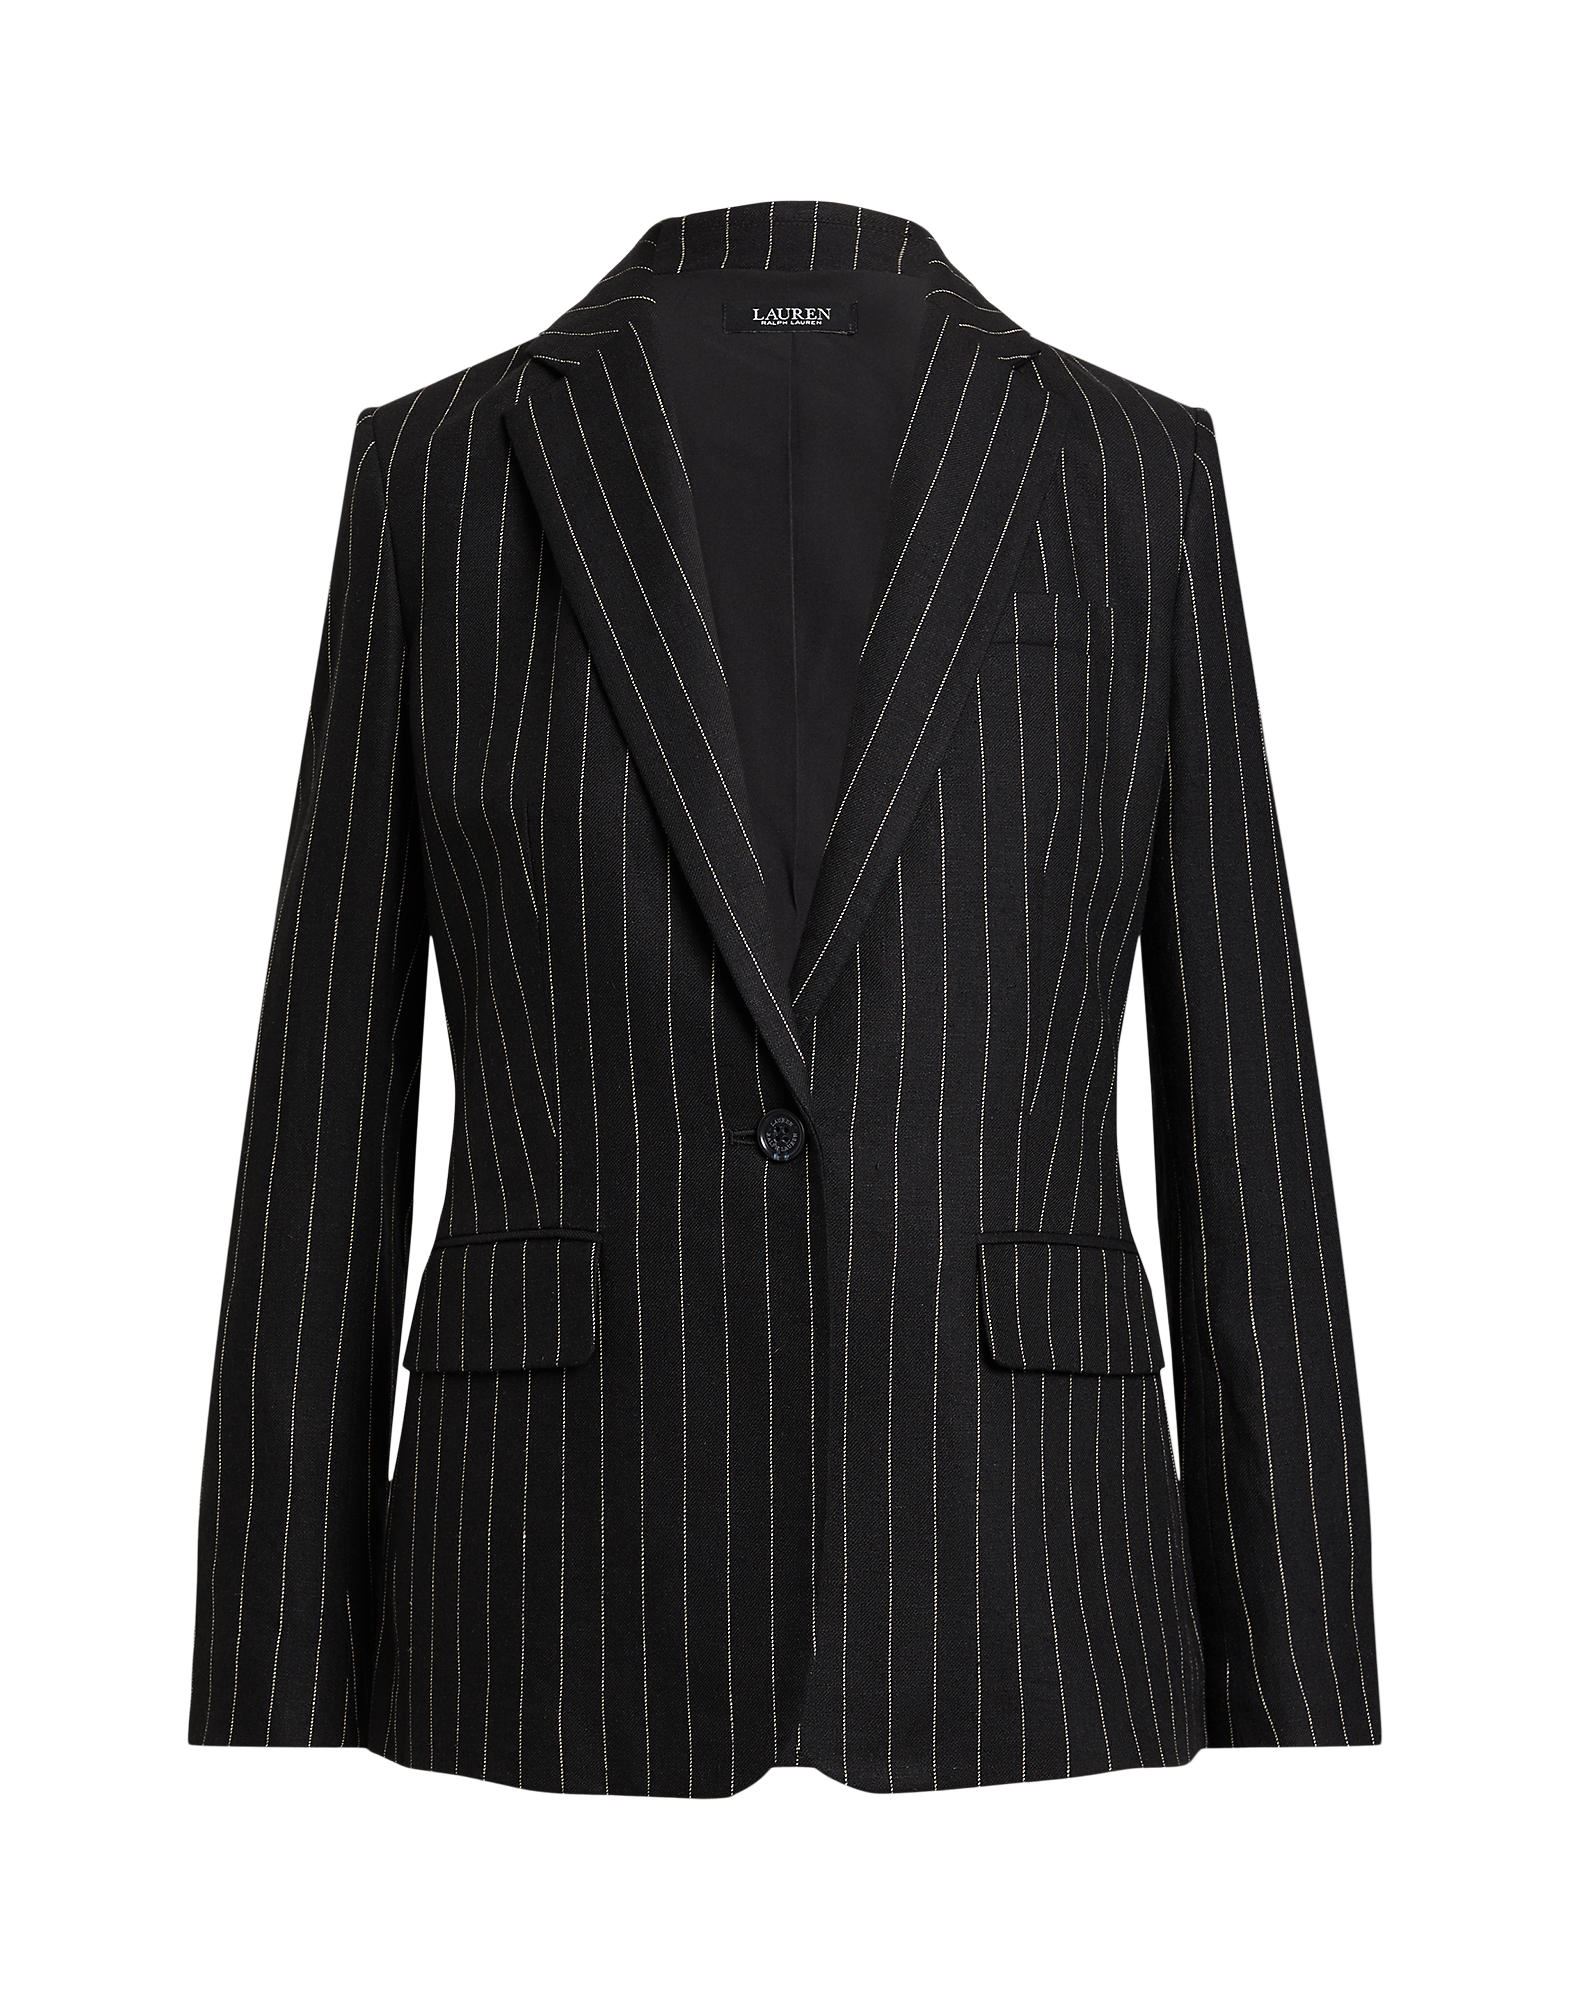 Lauren Ralph Lauren Suit Jackets In Black